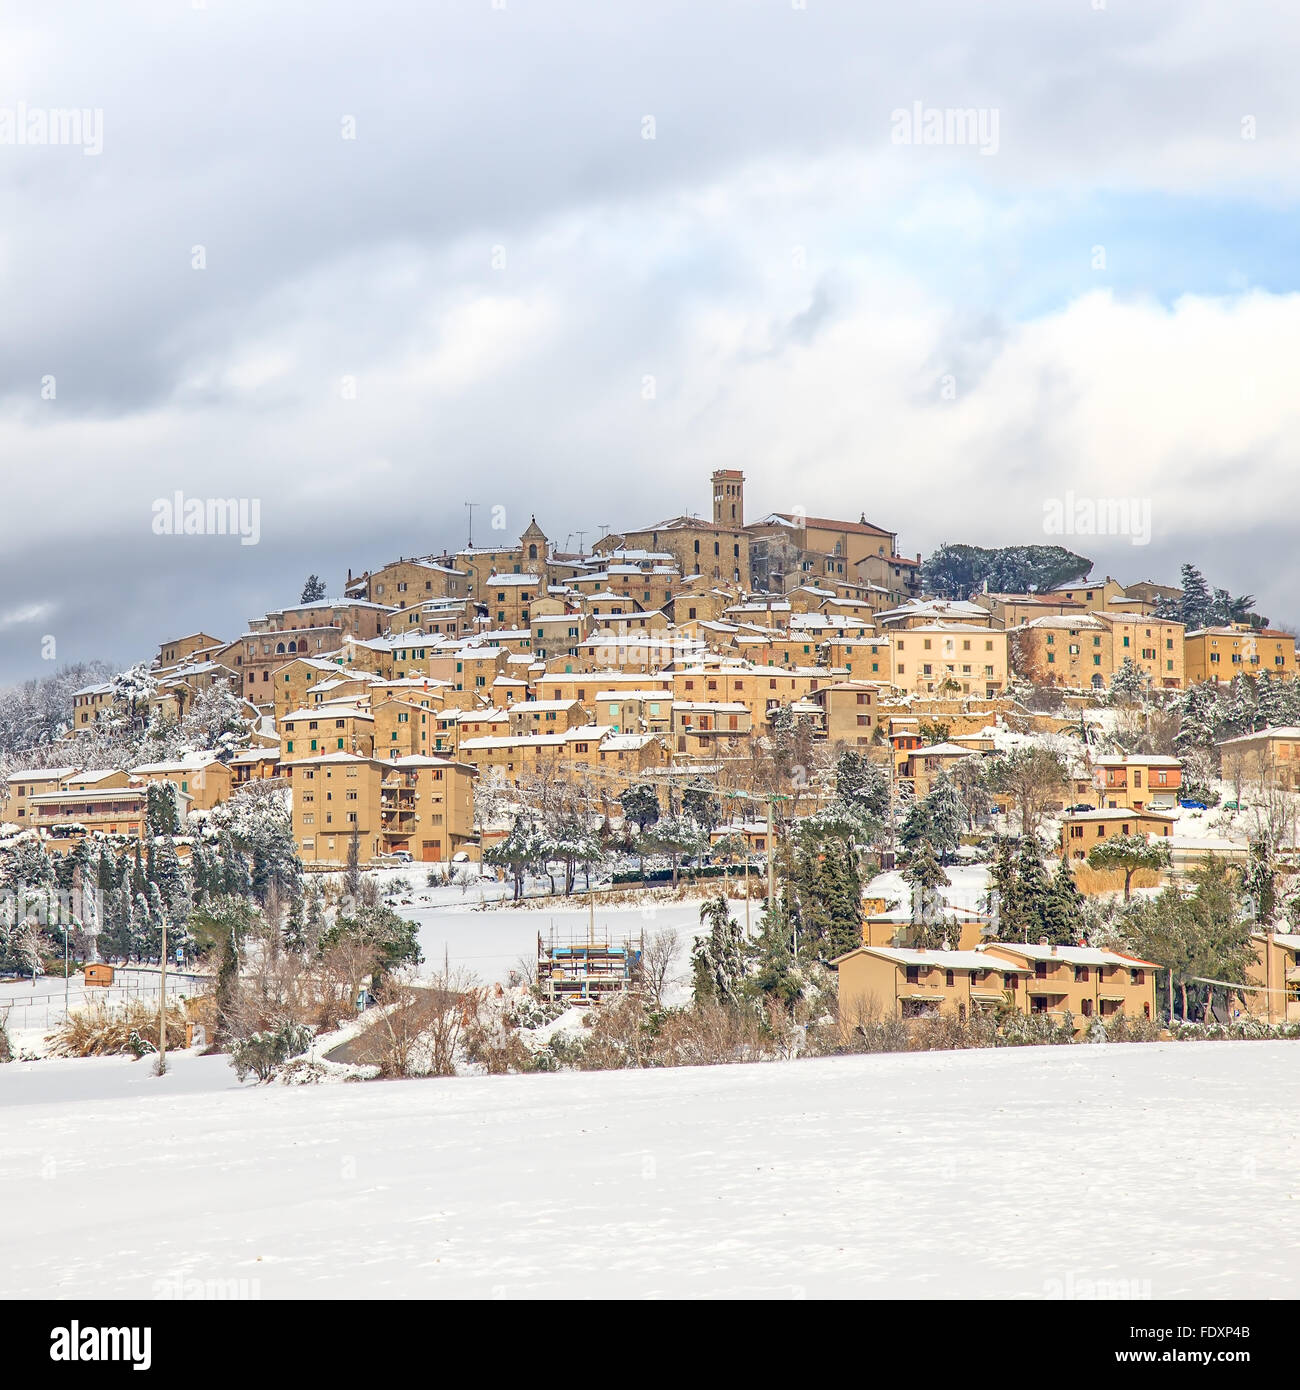 Toskana, Casale Marittimo alte Bauerndorf im Winter von Schnee bedeckt. Maremma, Italien, Europa Stockfoto